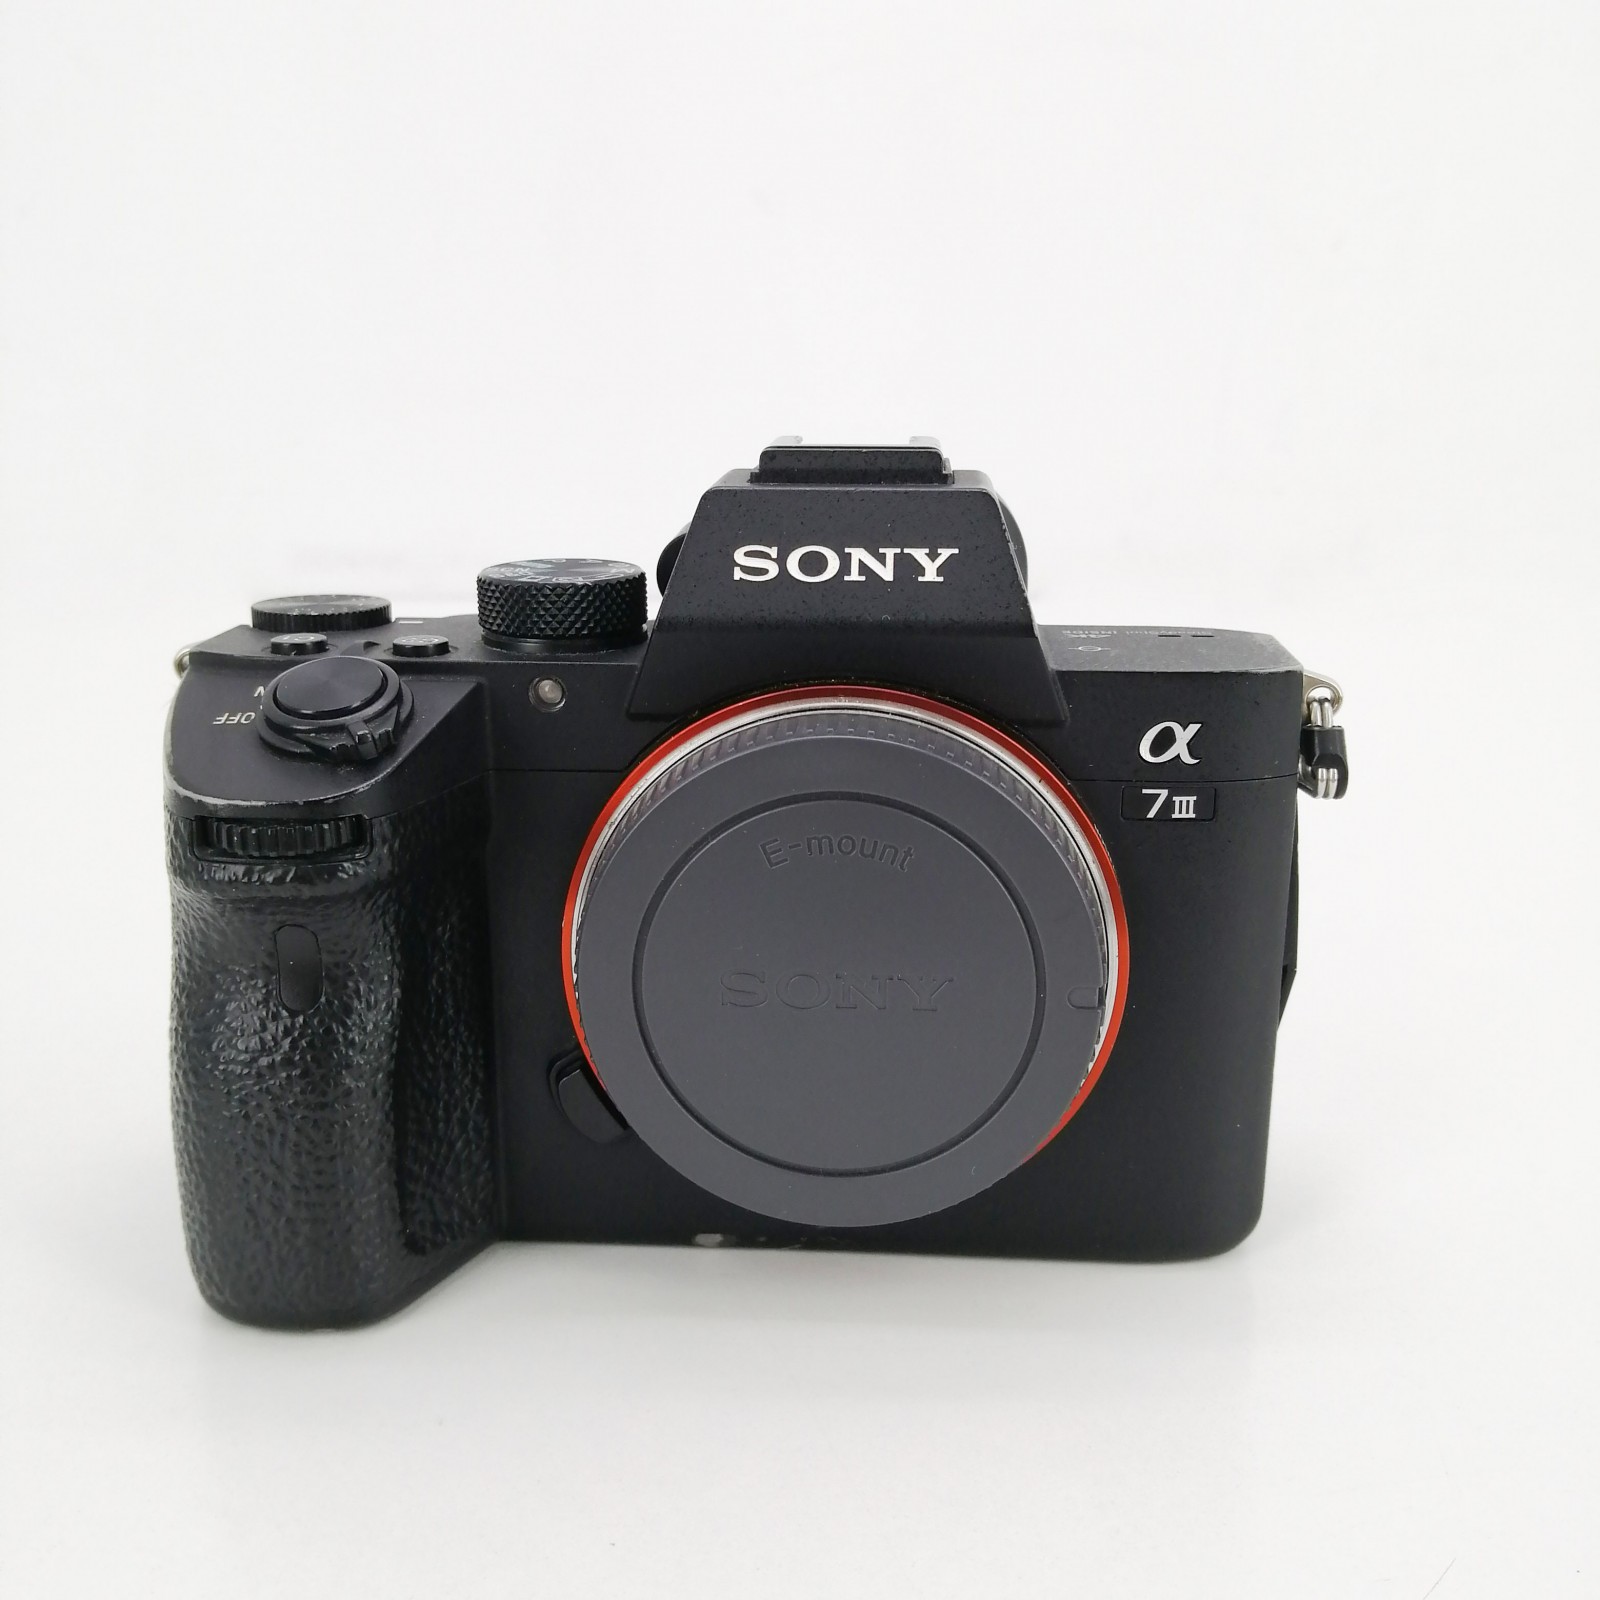 Cámara digital Sony A7 III cuerpo ILCE-7M3B 24,2mpx Full Frame de